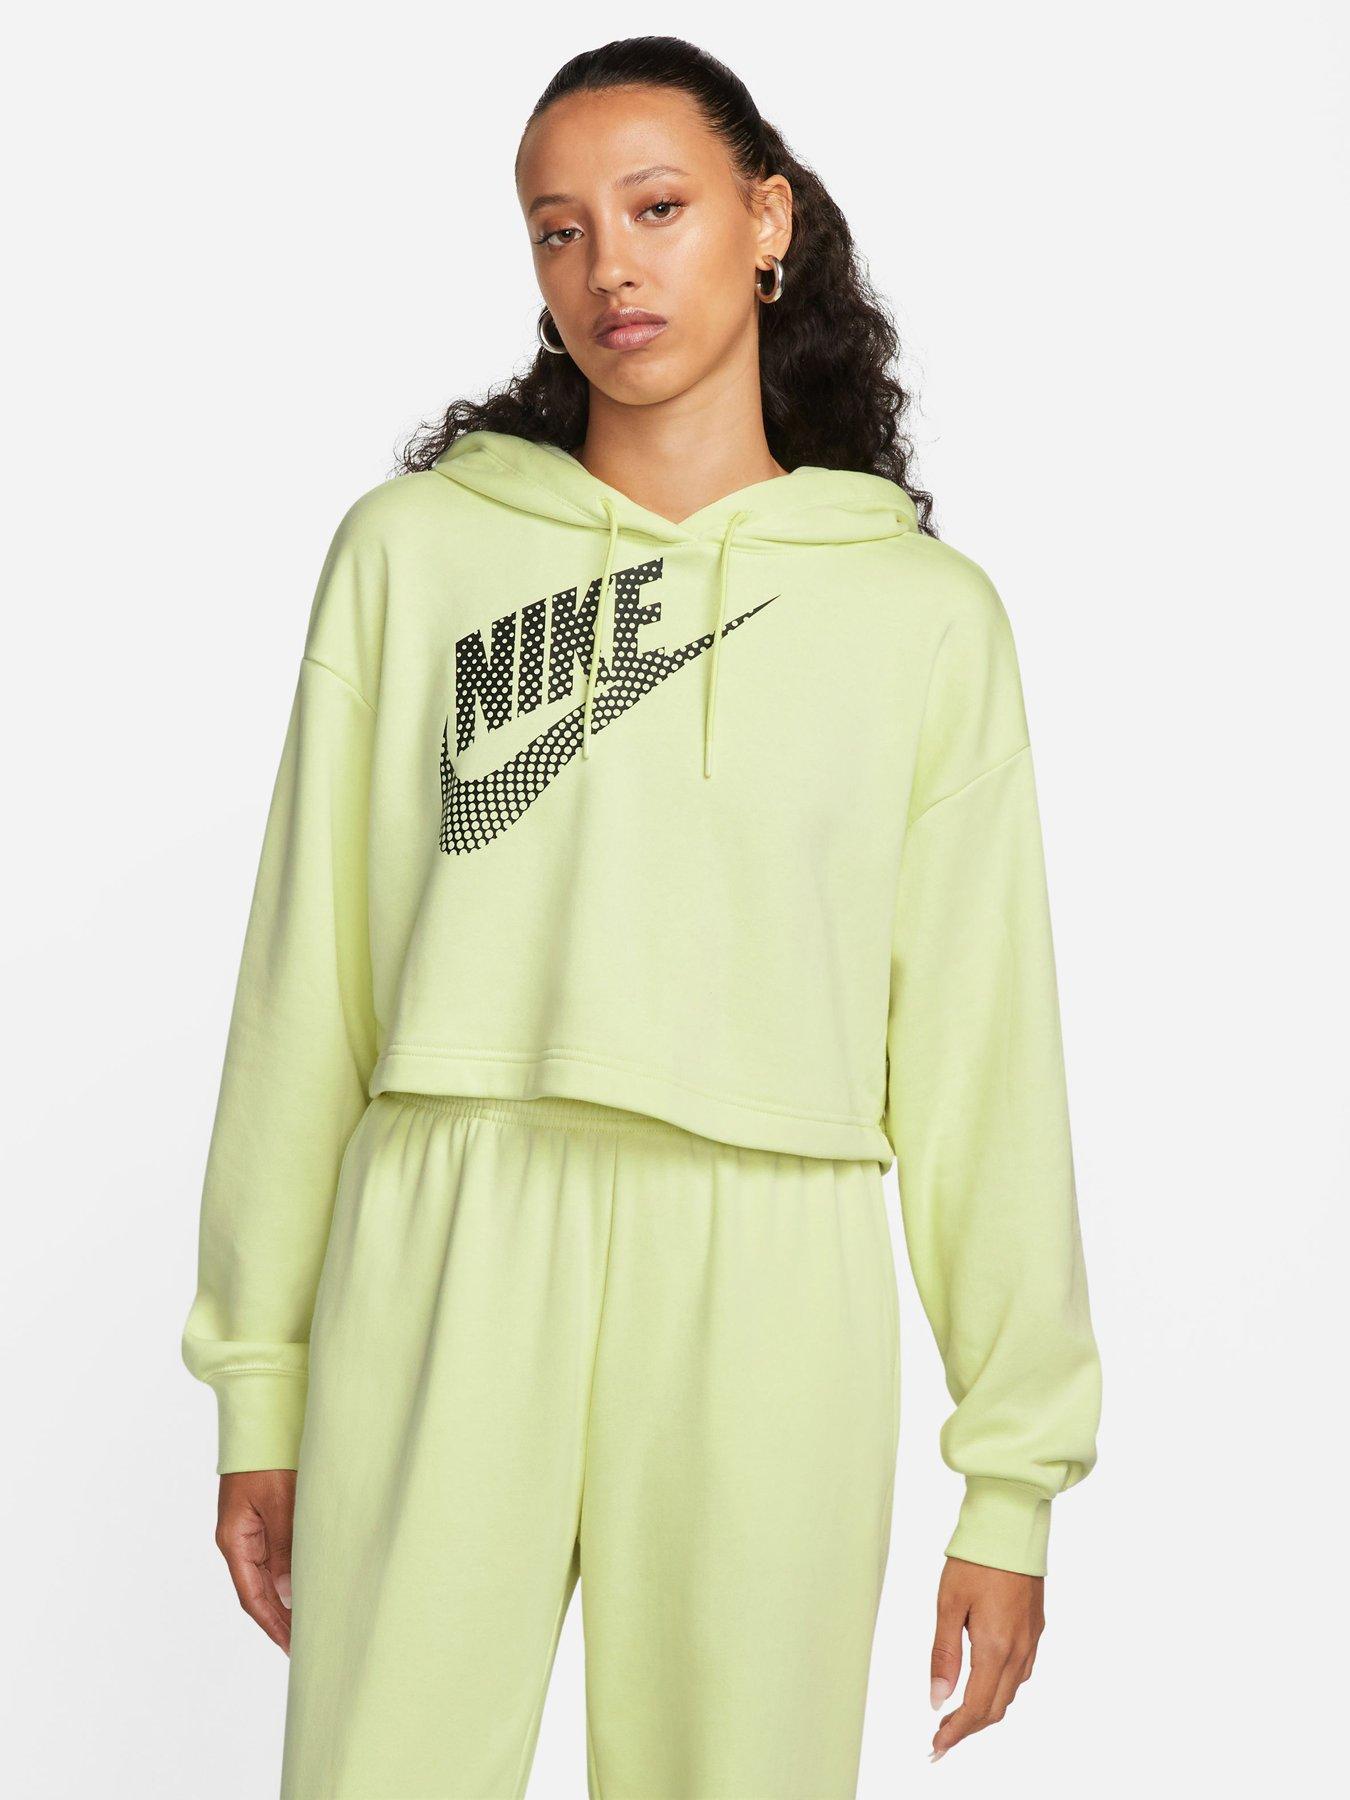 Nike Women's Sportswear Phoenix Fleece Oversized Pullover Hoodie in  Green/Oil Green Size Small Cotton/Polyester/Fleece - Yahoo Shopping